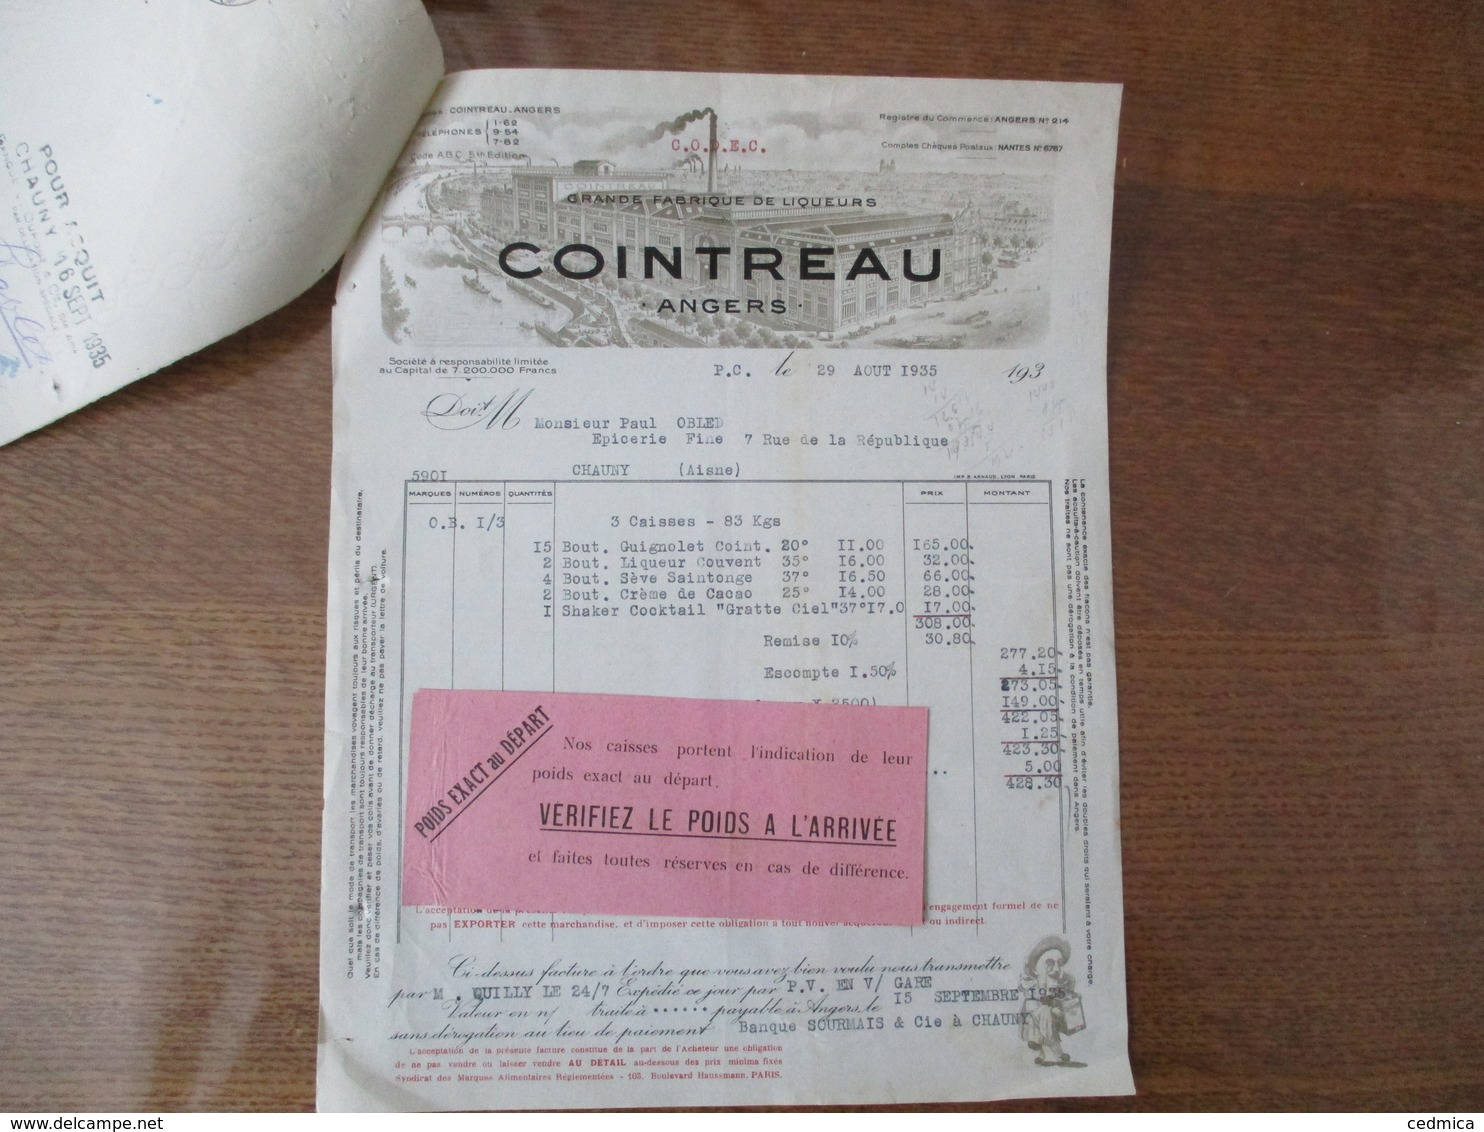 ANGERS COINTREAU GRANDE FABRIQUE DE LIQUEURS FACTURE ET TRAITE DU 29 AOUT 1935 - Invoices